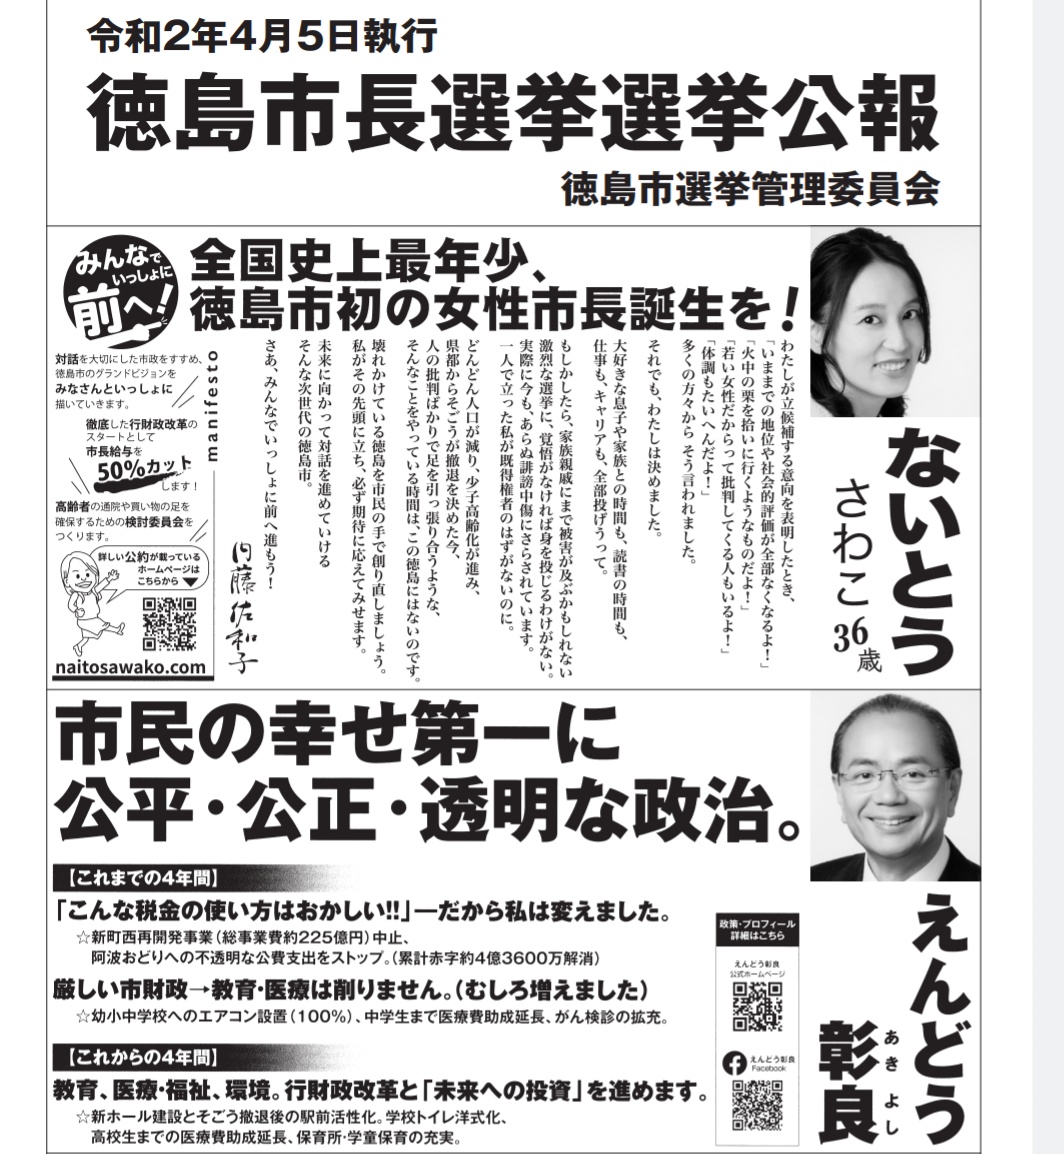 前回の徳島市長選挙の選挙公報。遠藤さんは阿波おどり利権に切り込んだことをちゃんと書いているが、内藤さんは単なる自分語り。選挙公報は公約や実績を書くものでは…？
内藤さんの唯一書かれている公約らしい公約は市長給与50%カットだが、1年も経たずに満額受け取るようになったのはご存知の通り